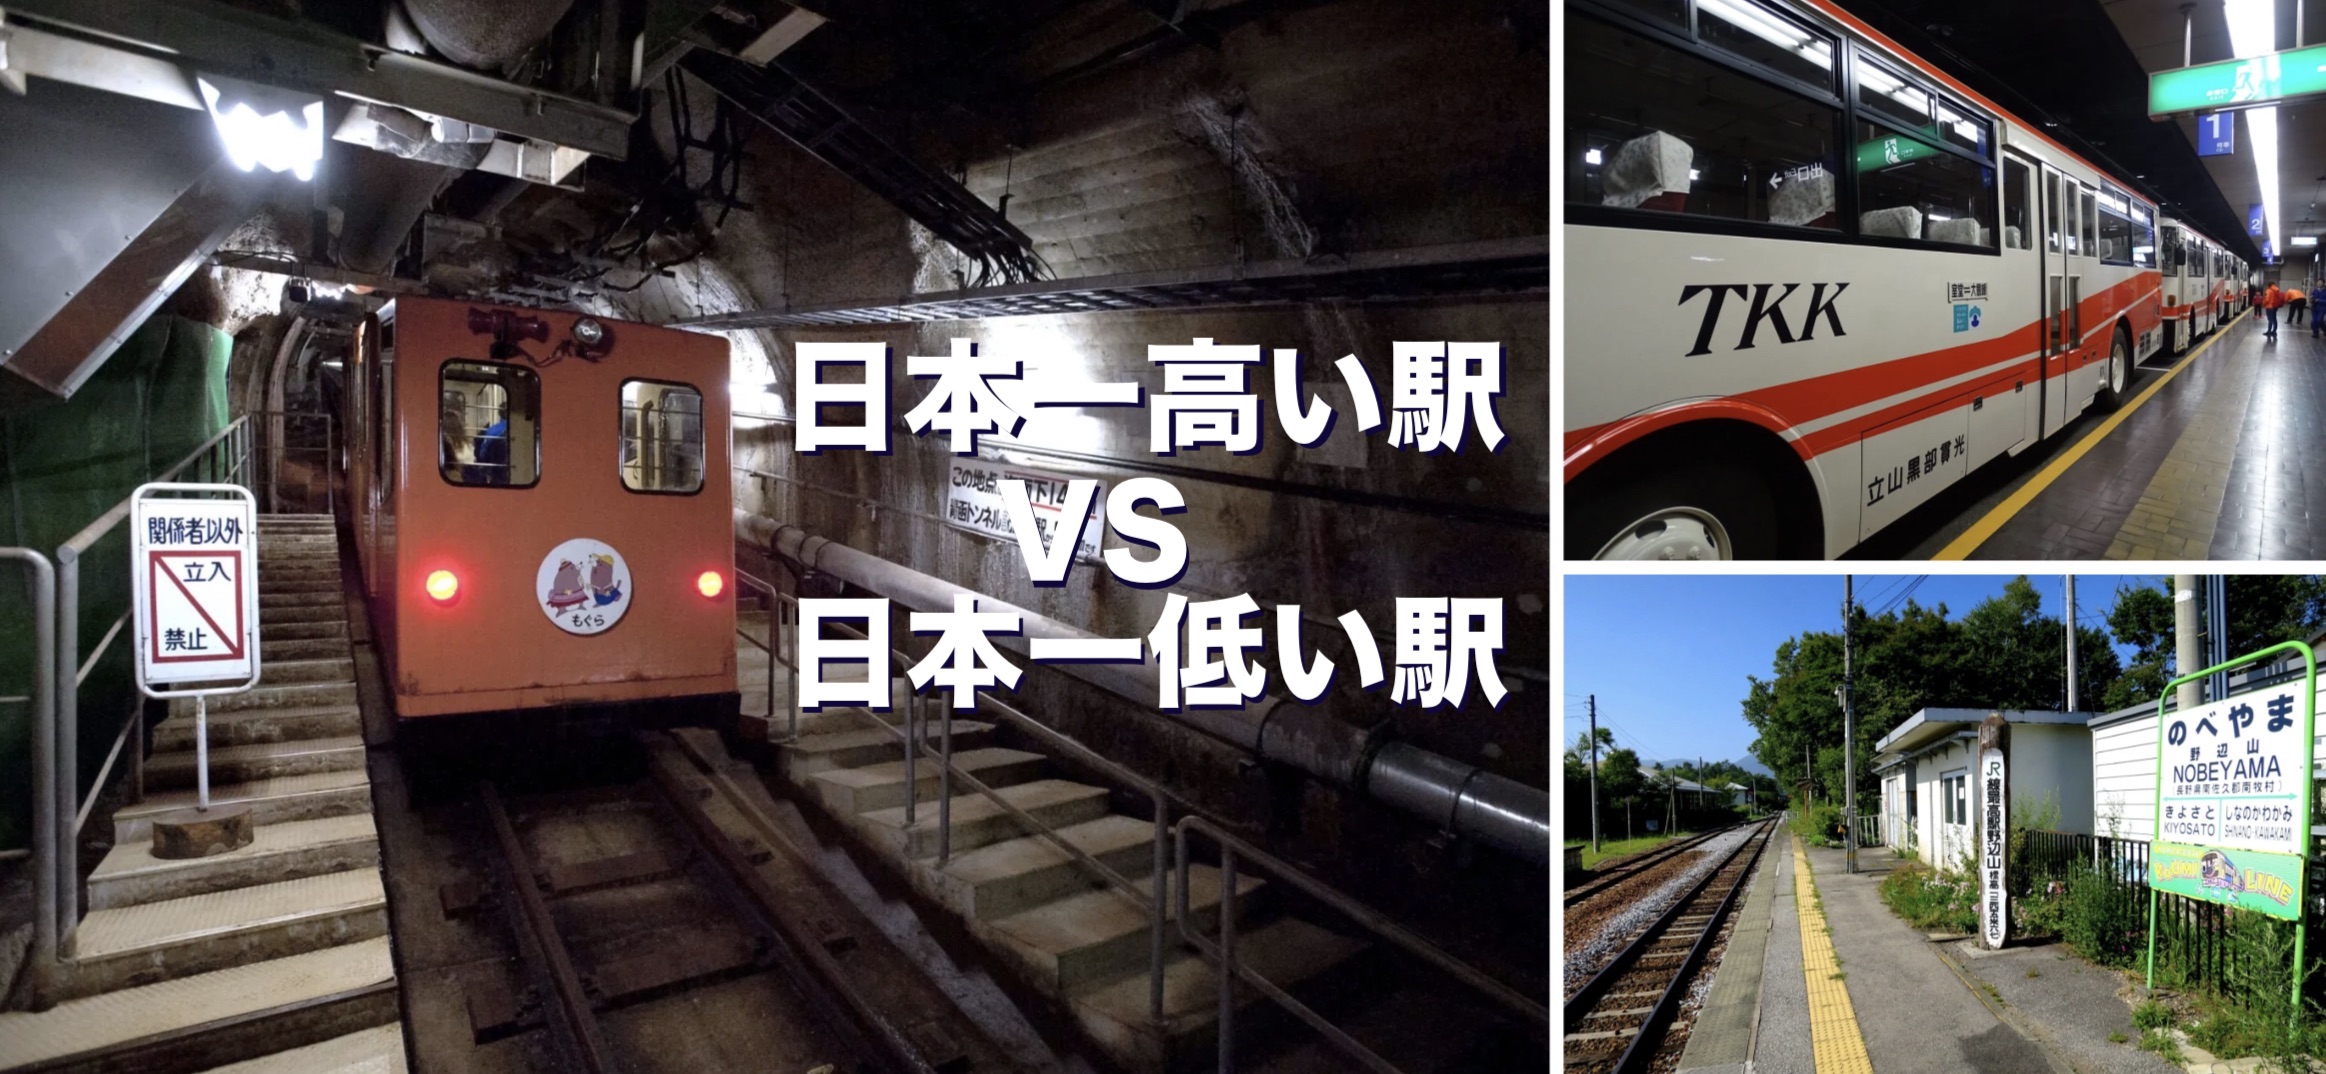 日本一高い駅 VS 日本一低い駅